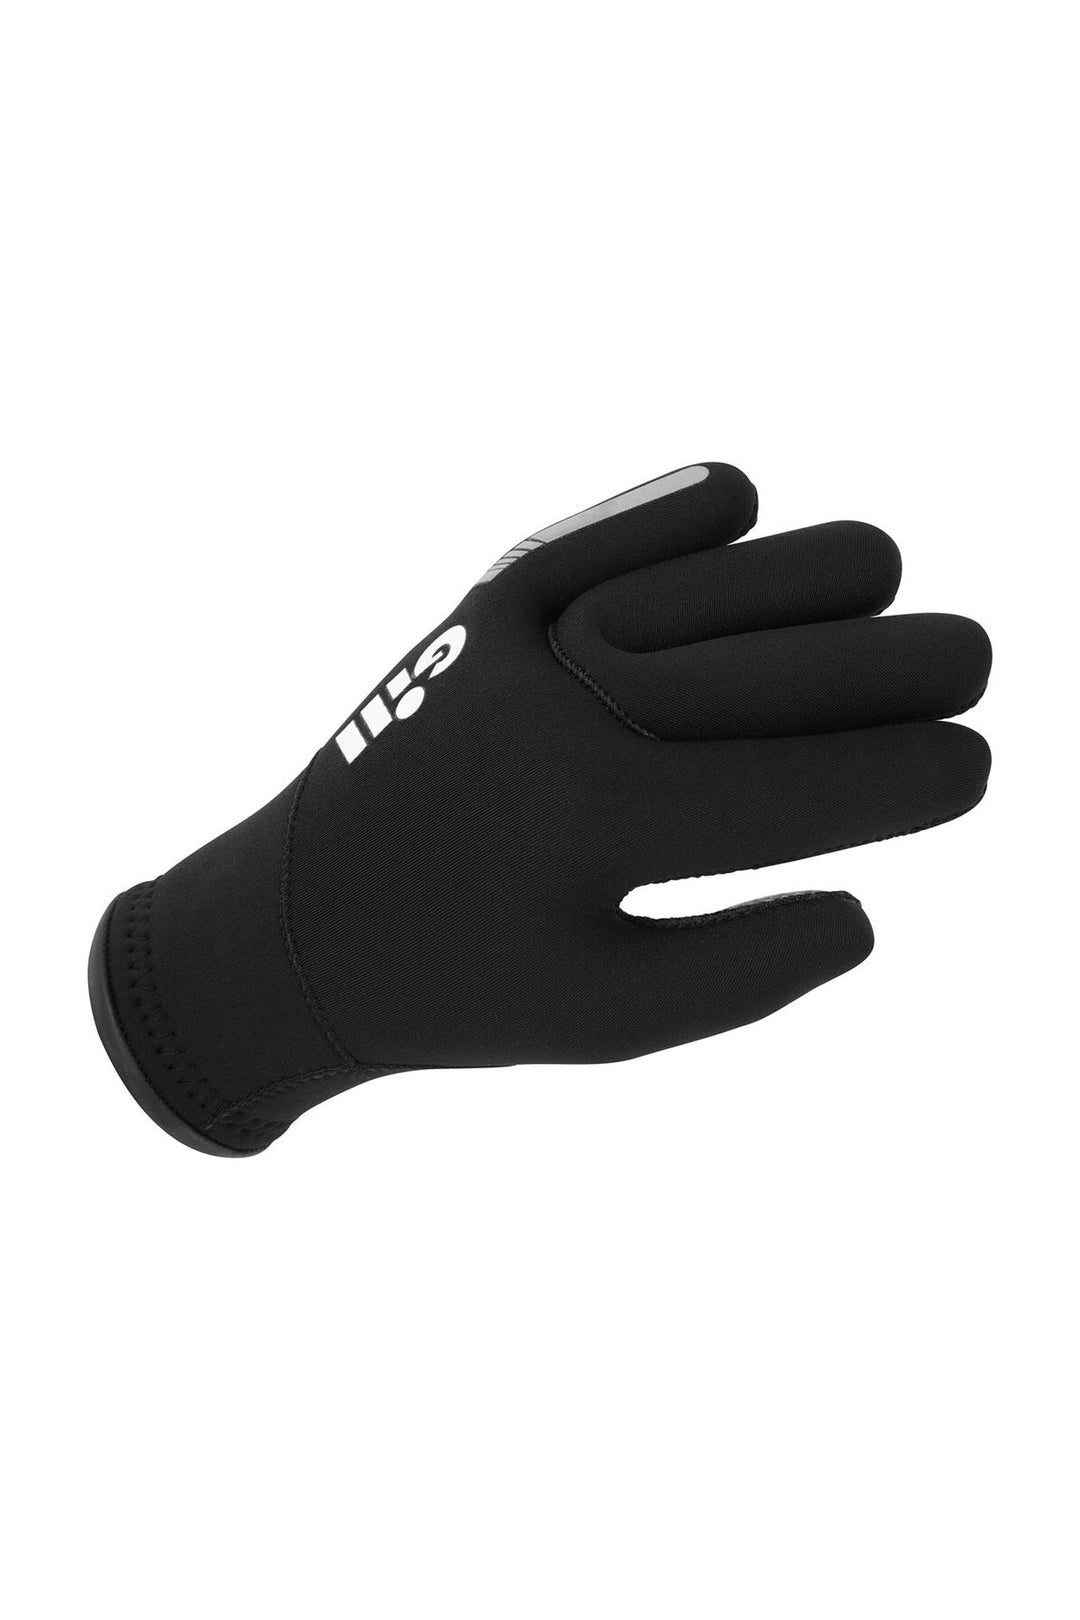 Gill Junior Neoprene Gloves - Black